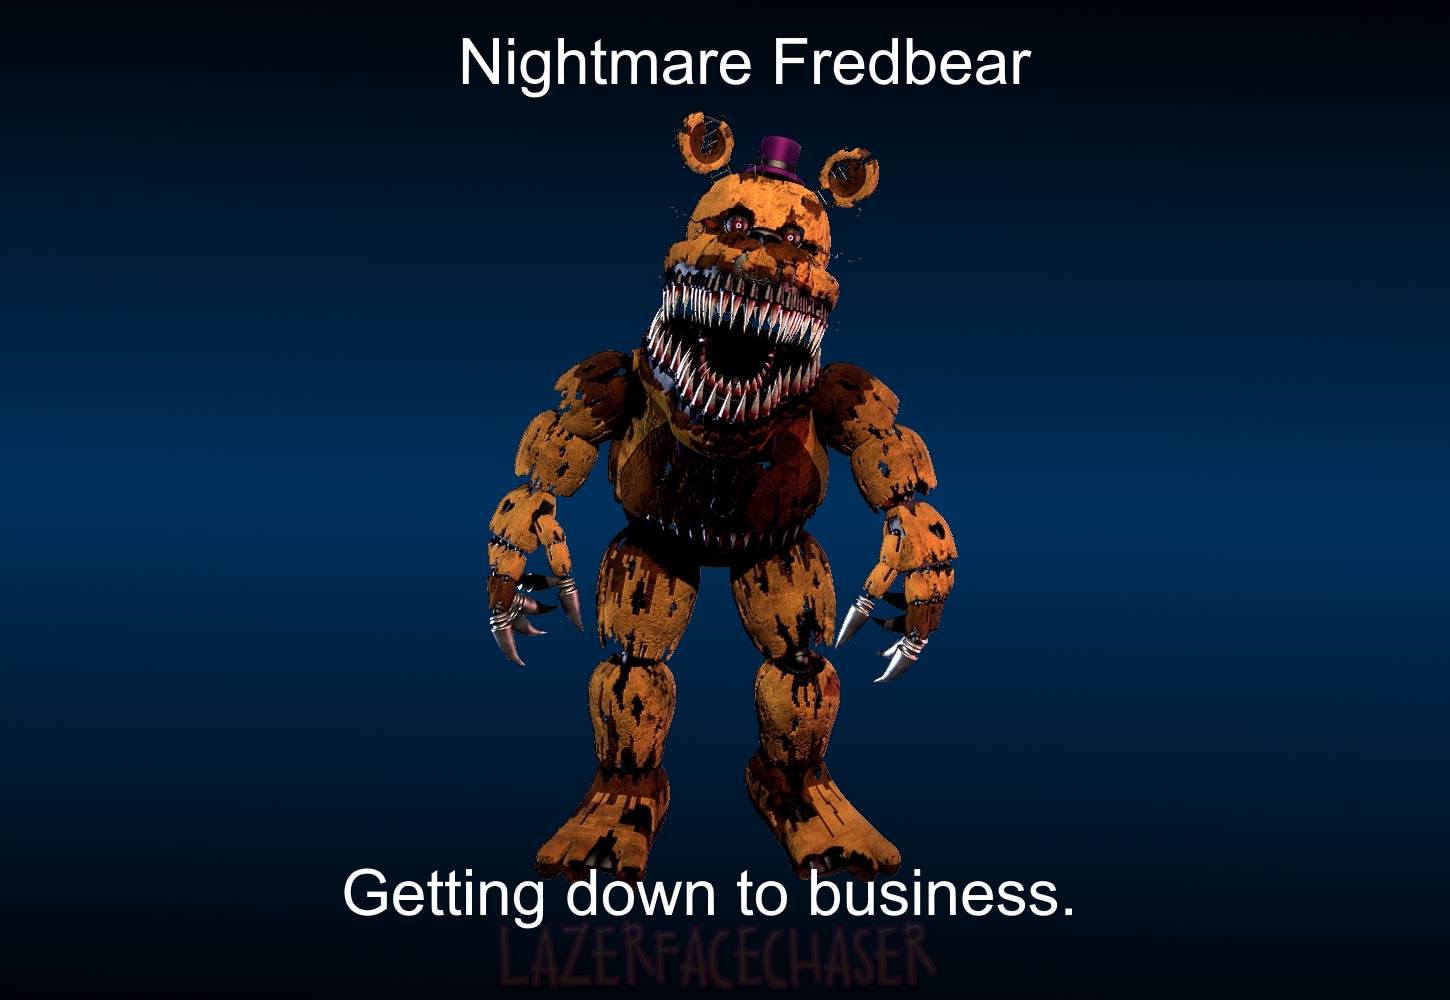 Nightmare Fredbear Render by CynfulEntity on DeviantArt